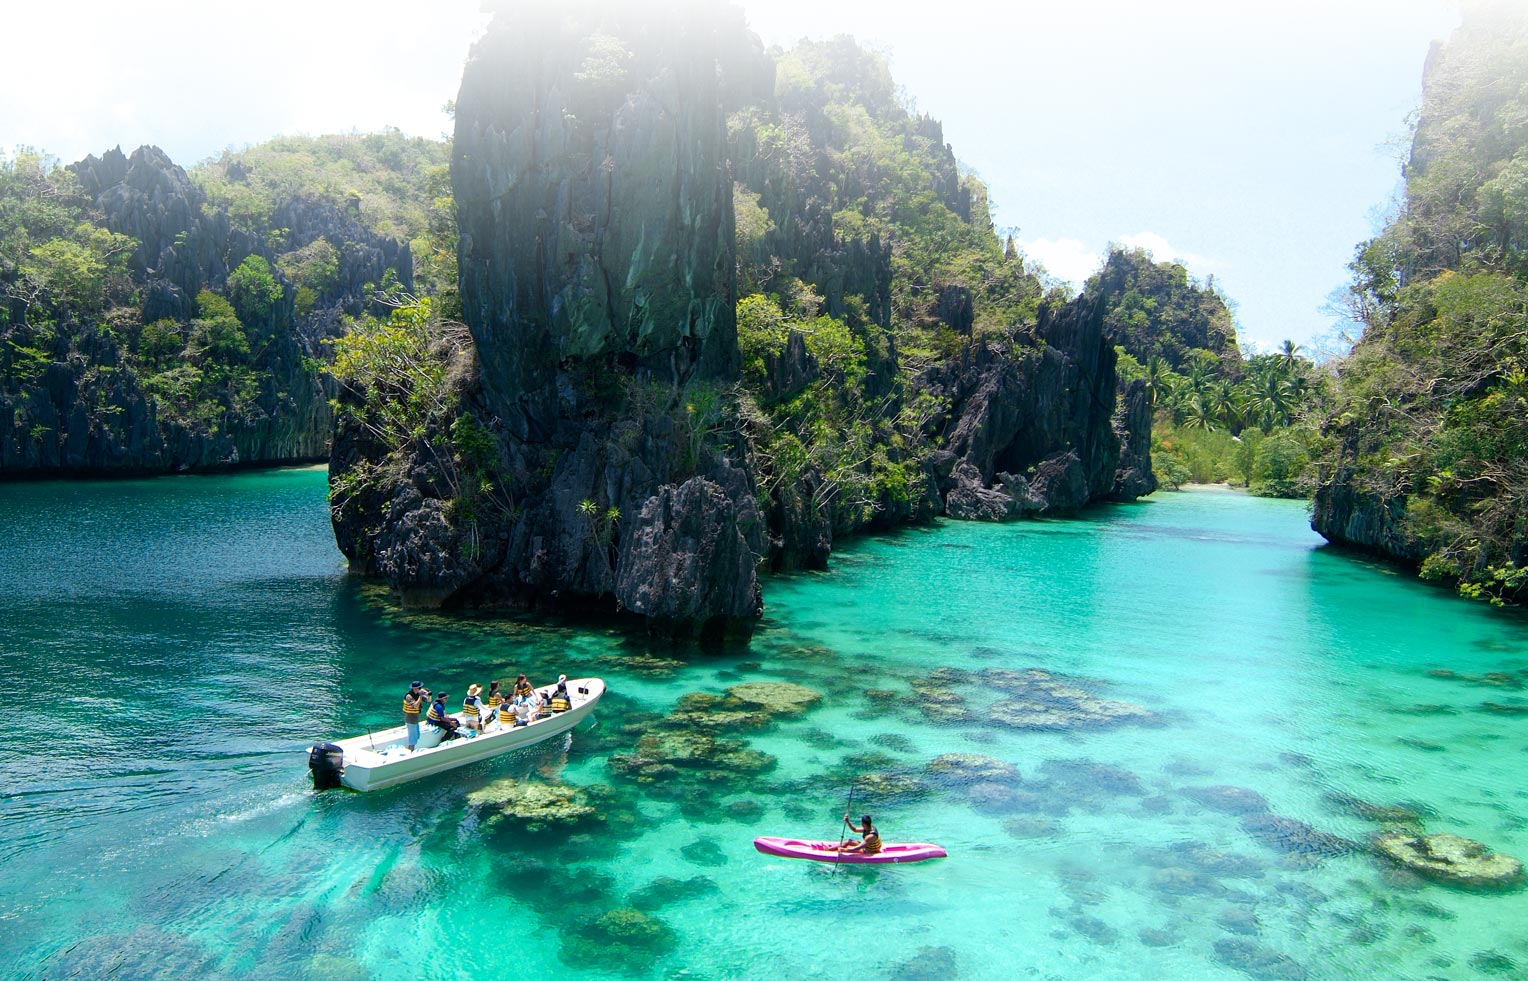 Kinh nghiệm vi vu Philippines chỉ ~20tr bởi Travel Blogger Cường Lỳ: Coron – Cebu – El Nido